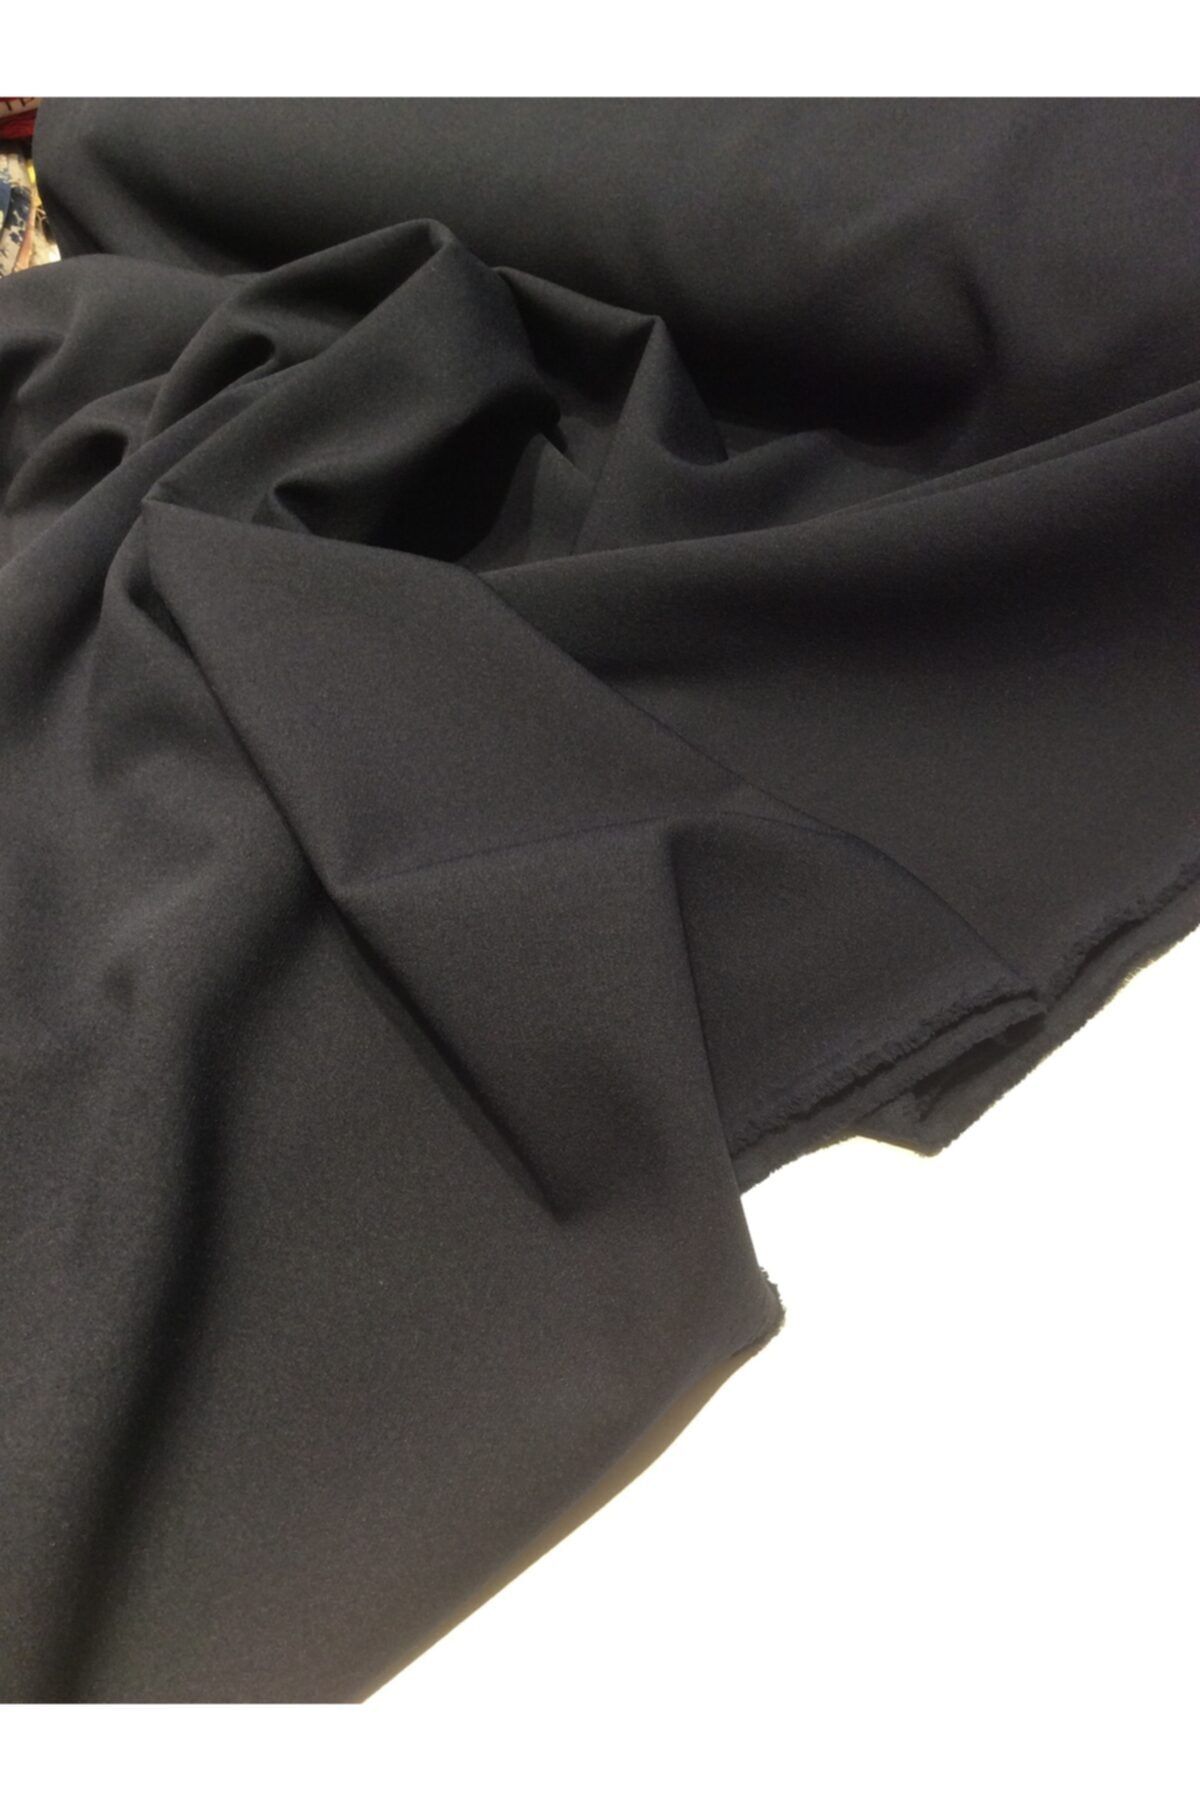 Nadirzade Kumaşçılık Likralı Elbiselik Double Krep Kumaş (150 Cm Eninde)